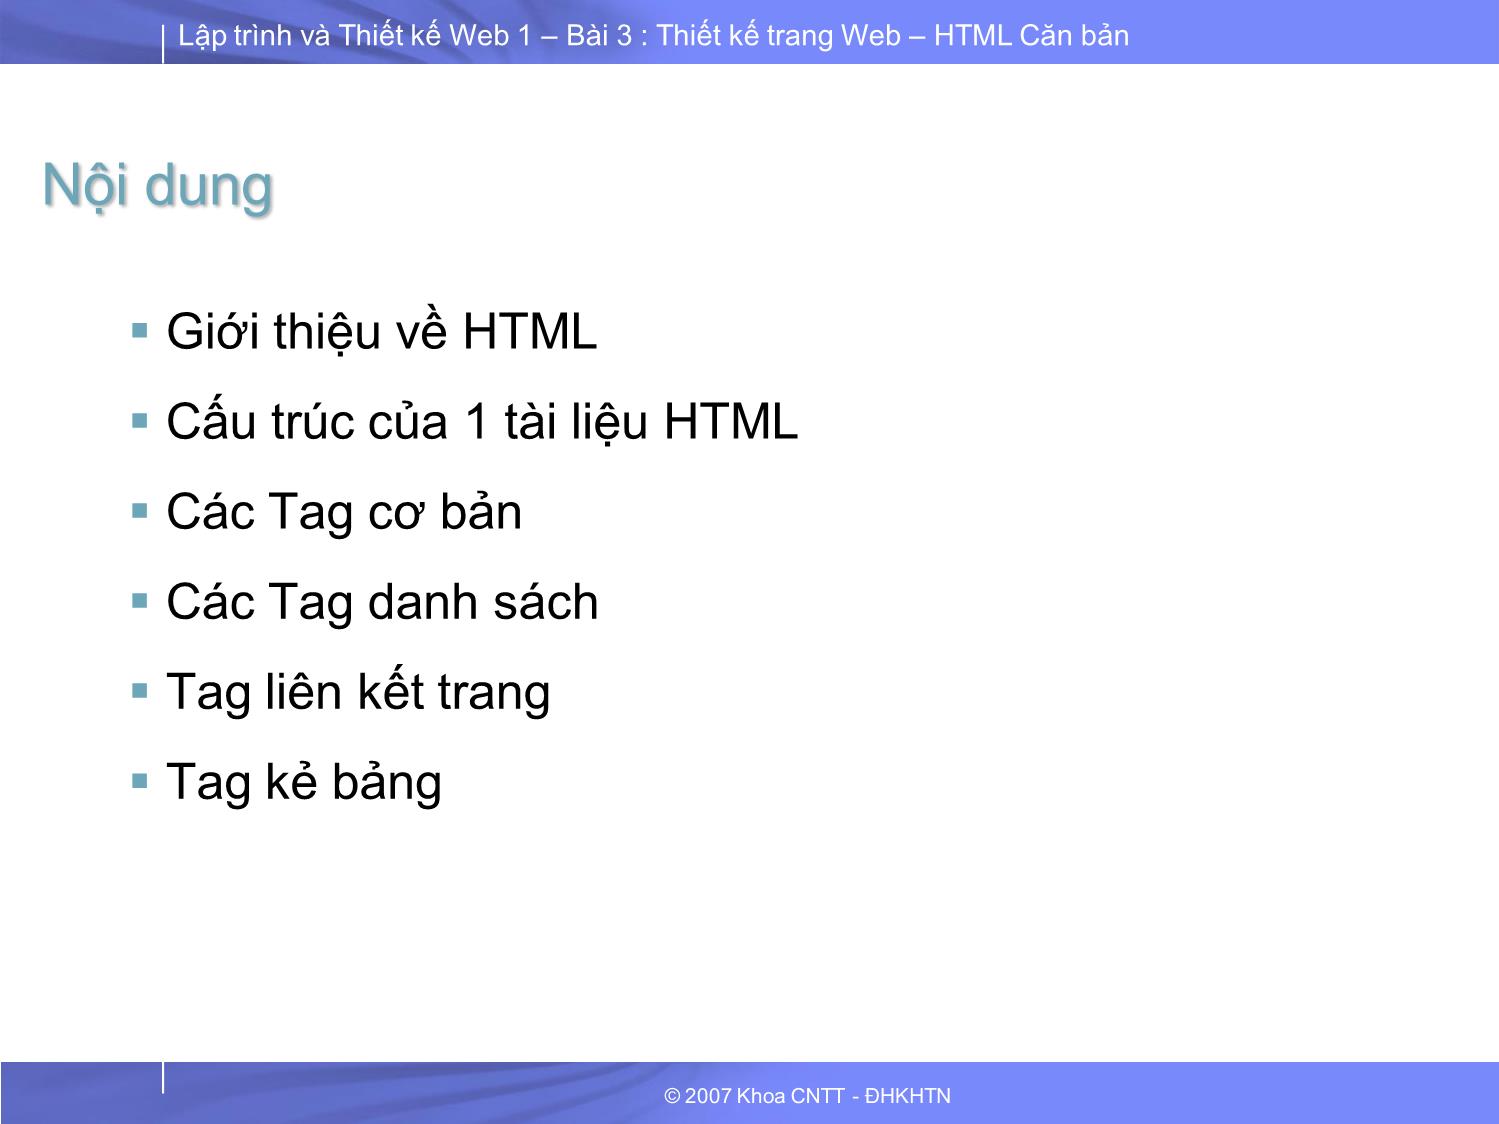 Lập trình và thiết kế Web 1 - Bài 3: Thiết kế trang Web HTML căn bản trang 2